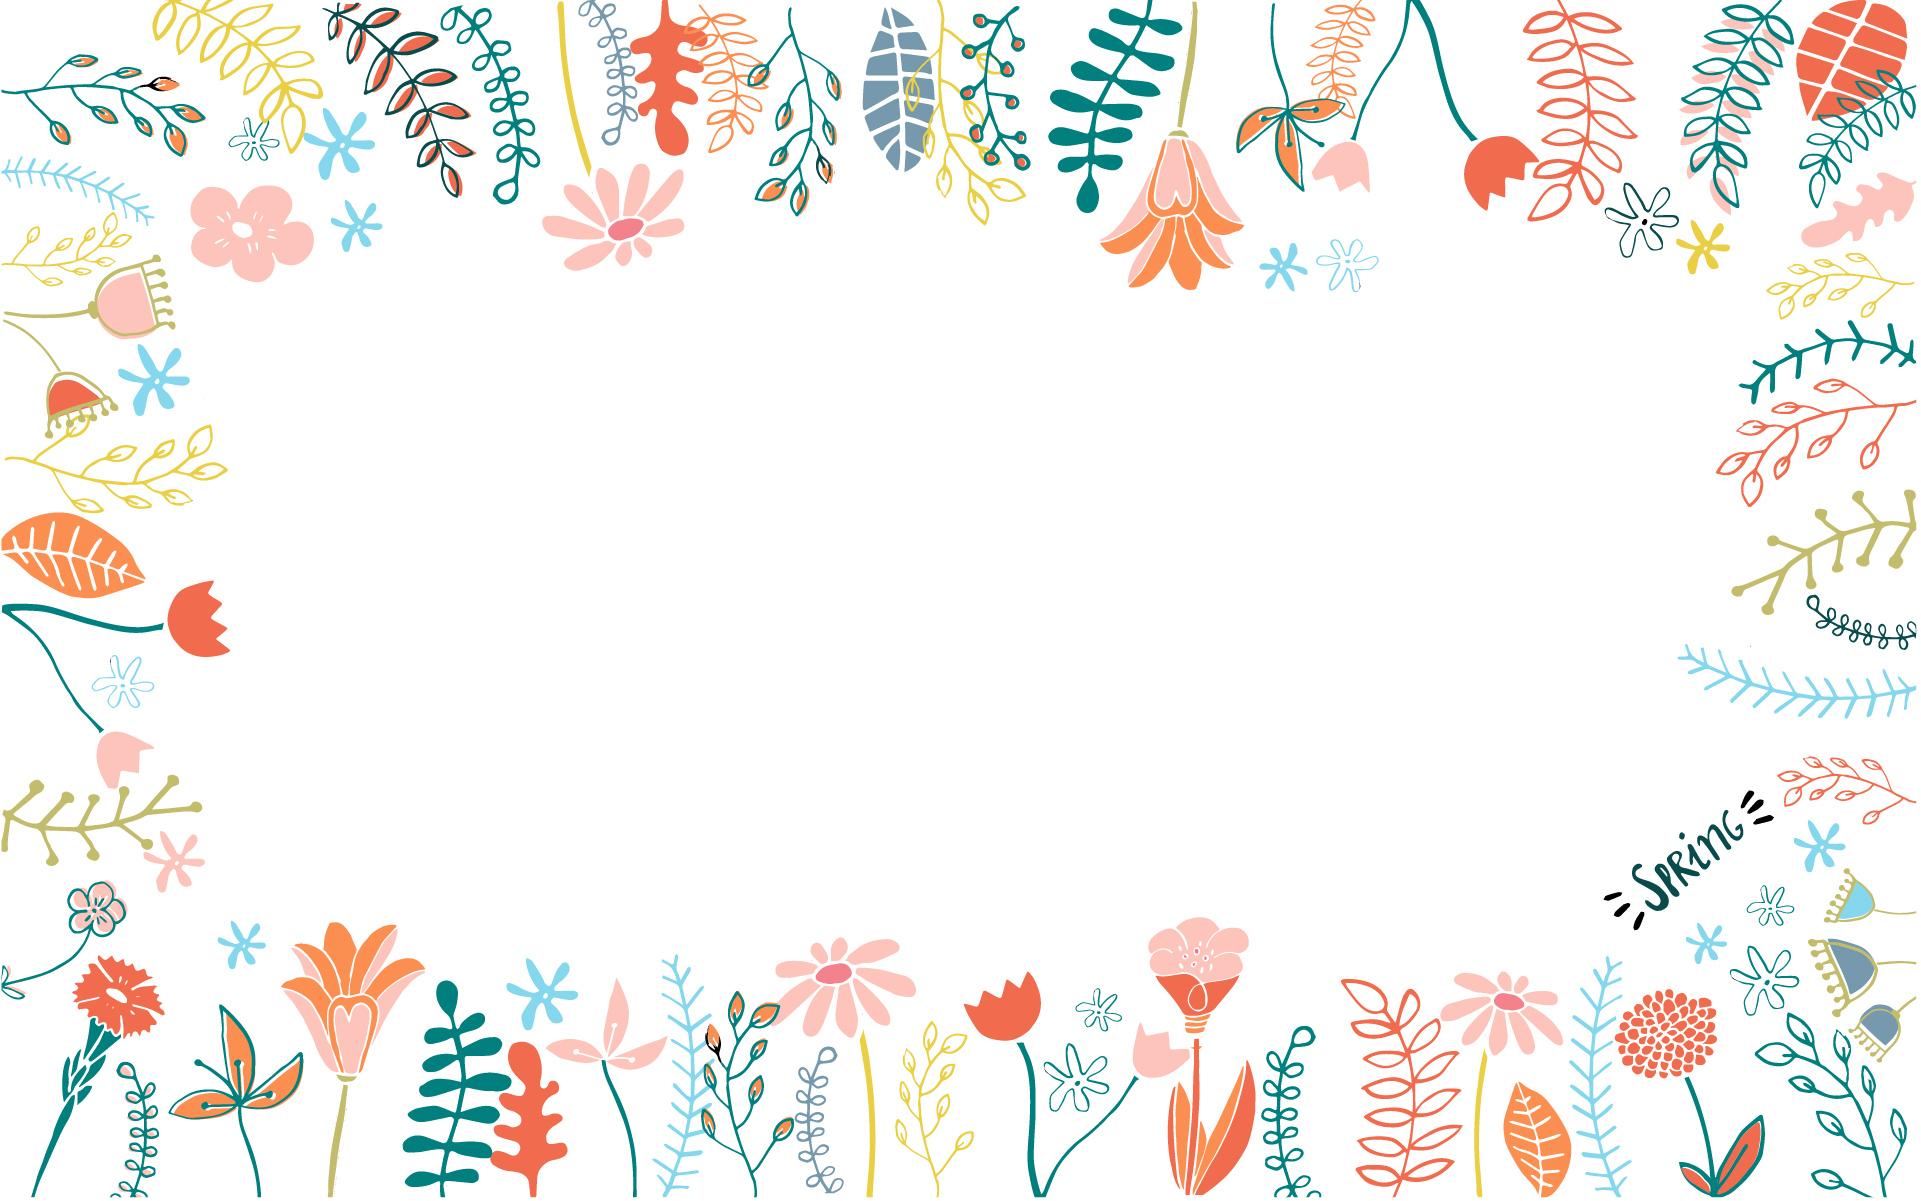 FREE floral wallpaper for your desktop